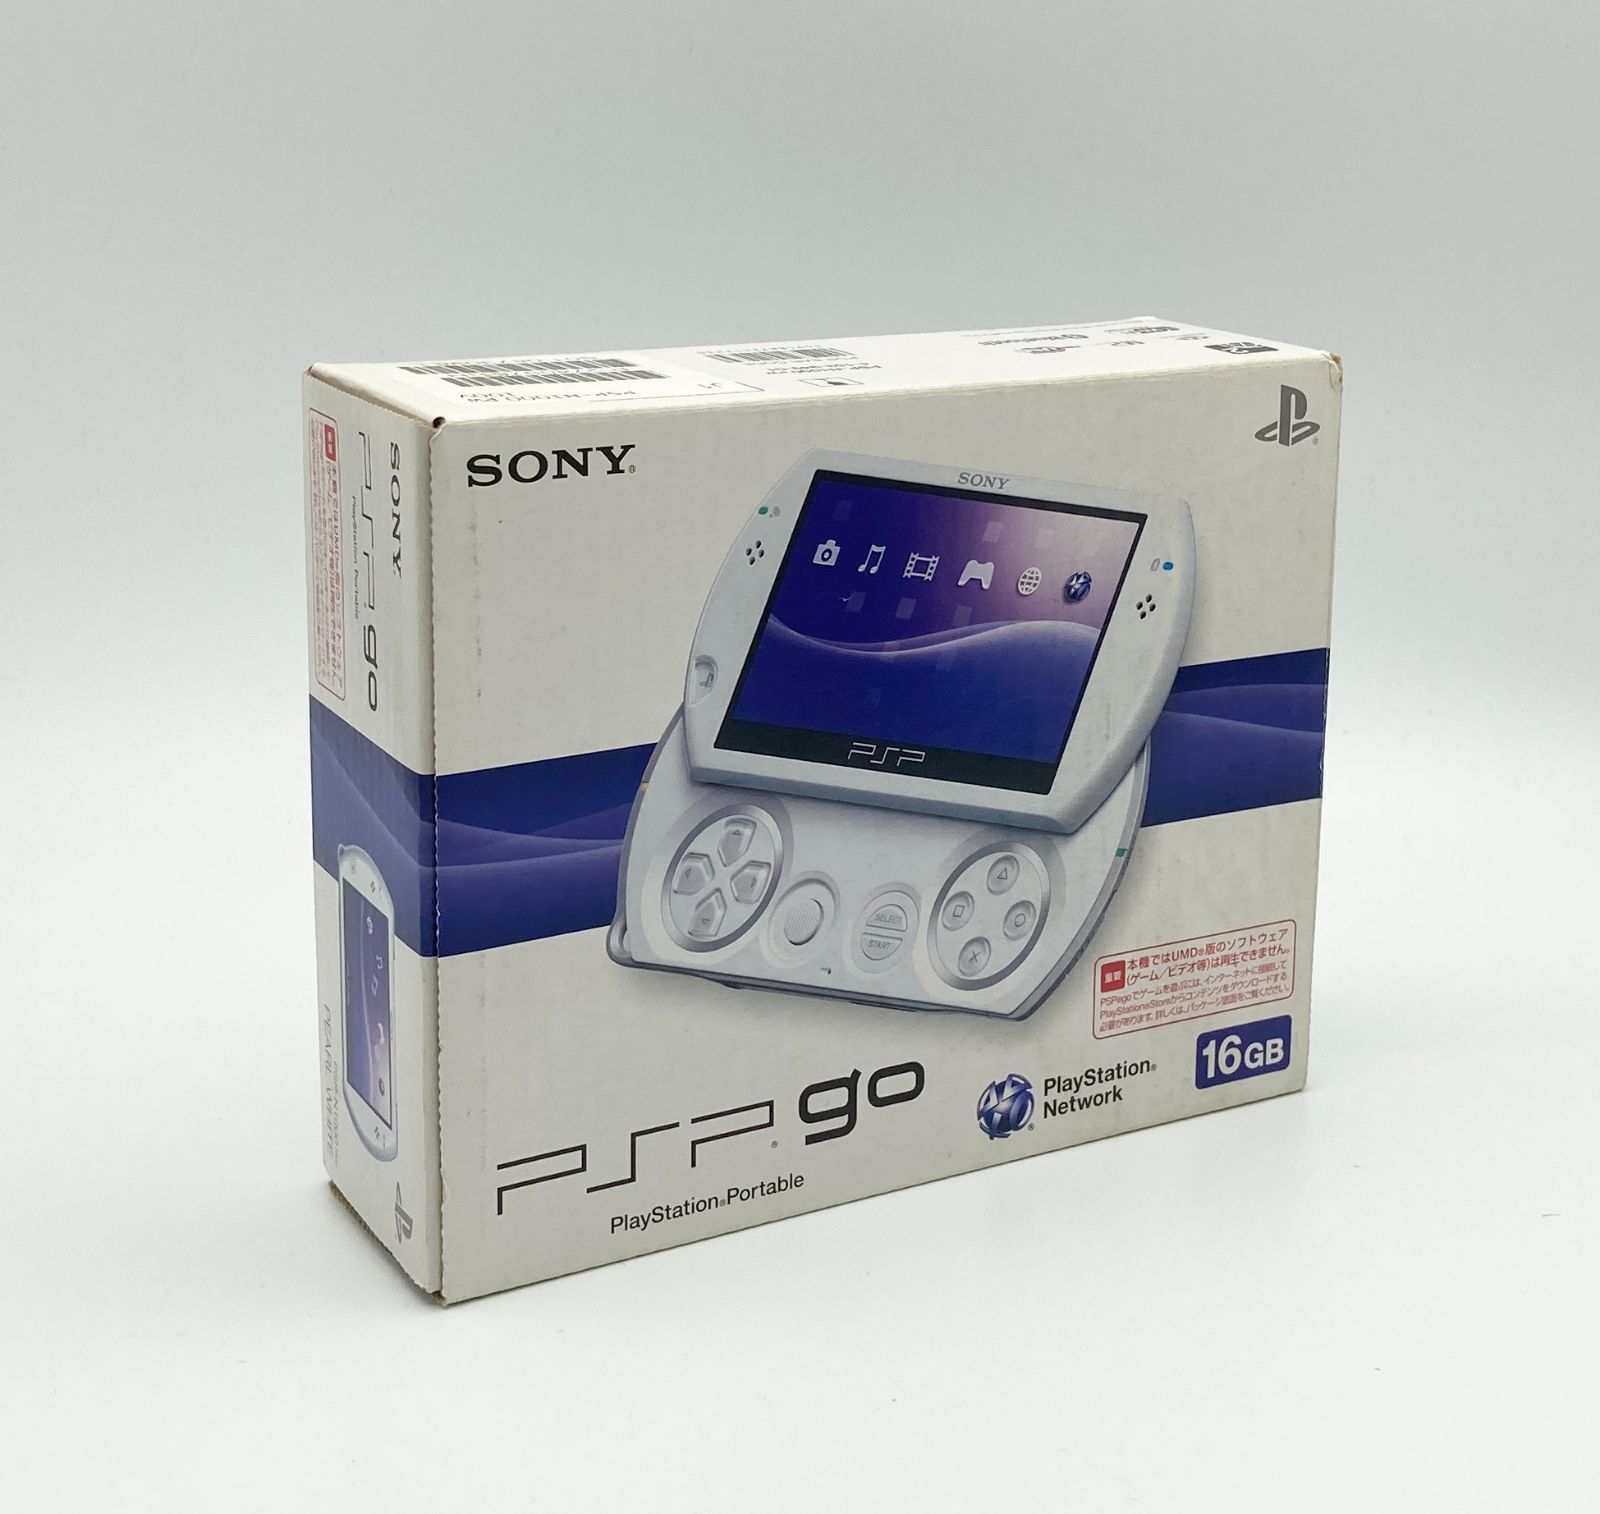 正規取扱店 未使用品 極美品 パール ホワイト PSP-3000PW 生産終了訳